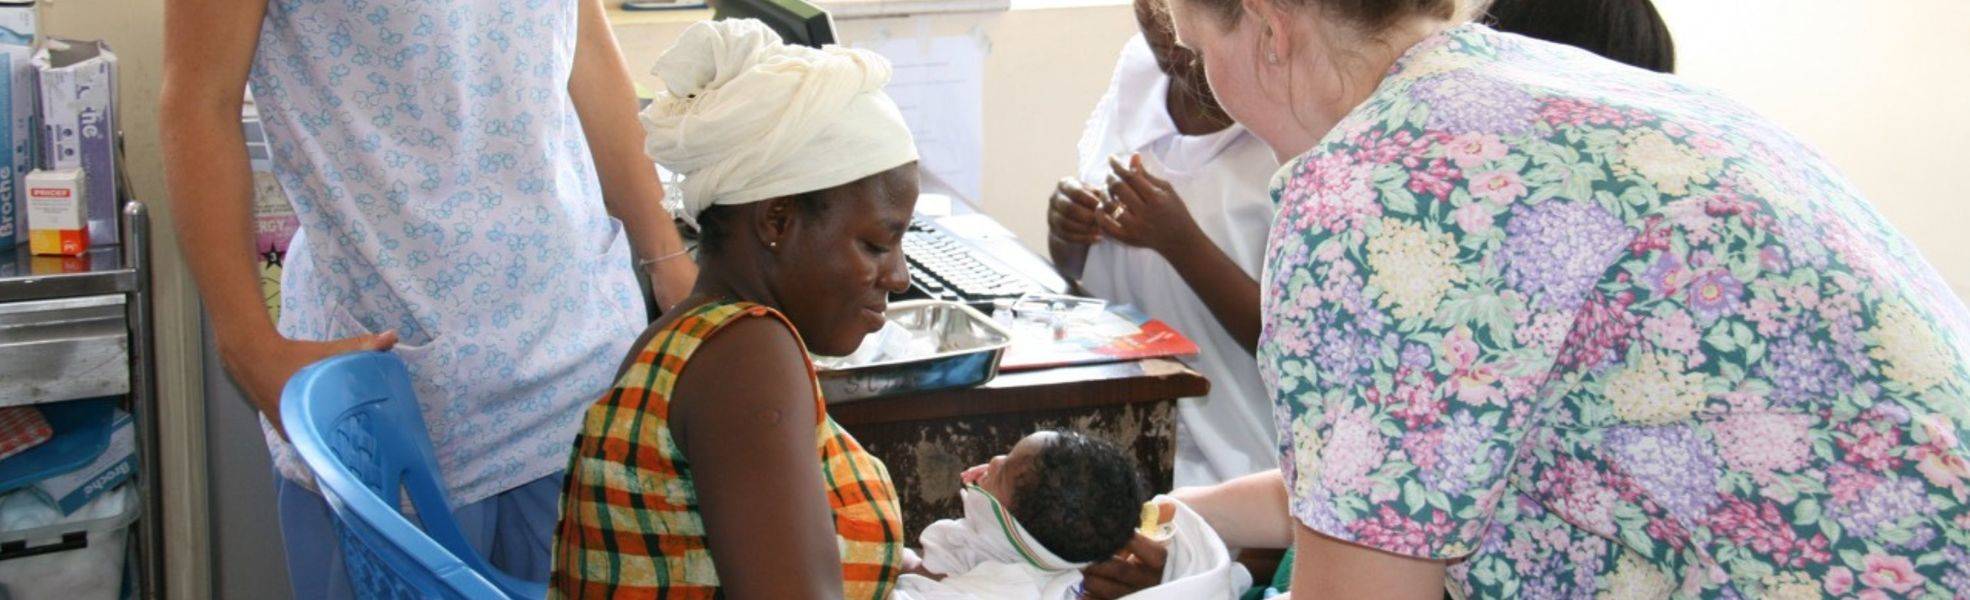 Volunteer bei ihrem medizinischen Auslandspraktikum in Ghana